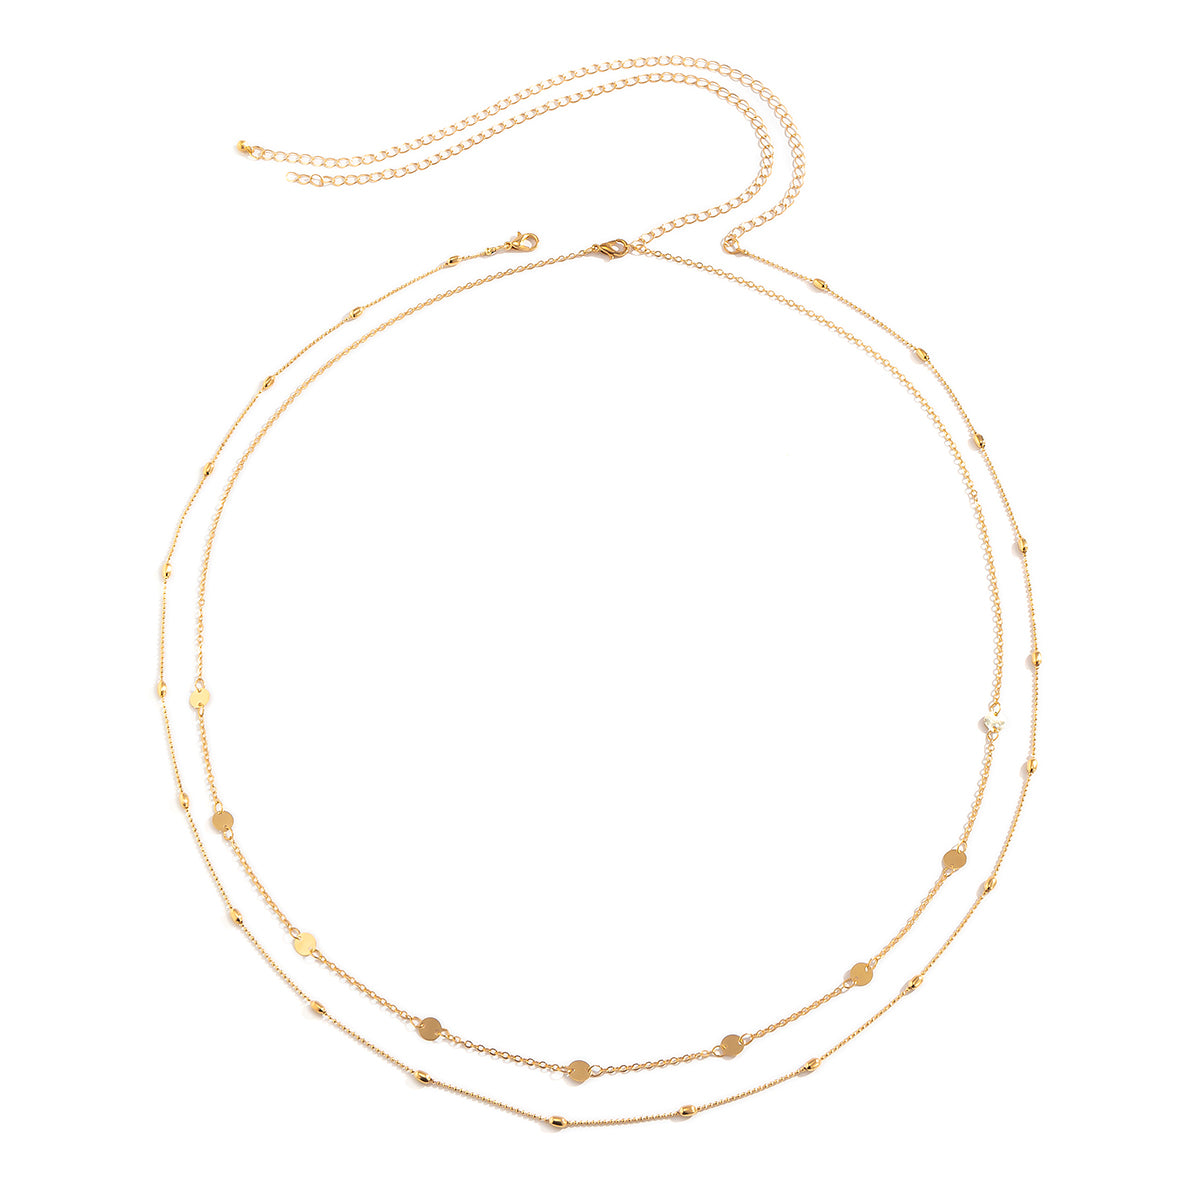 1 Set Fashion Round Metal Copper Layered Tassel Chain Women'S Waist Chain